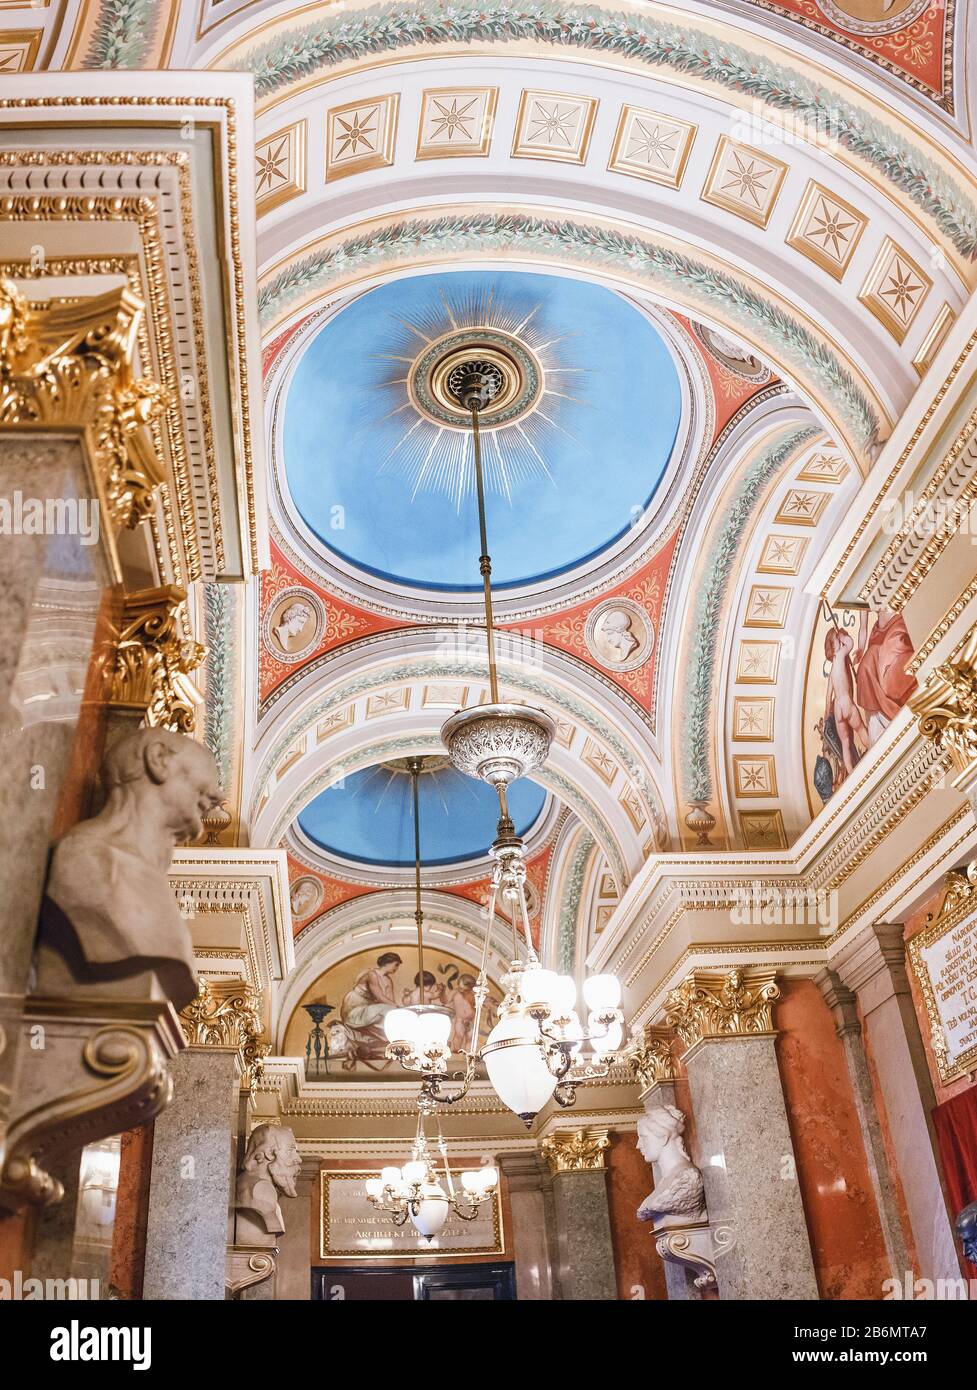 03 DÉCEMBRE 2017, PRAGUE, RÉPUBLIQUE TCHÈQUE : magnifique lustre au plafond avec des peintures au Théâtre national de Prague Banque D'Images